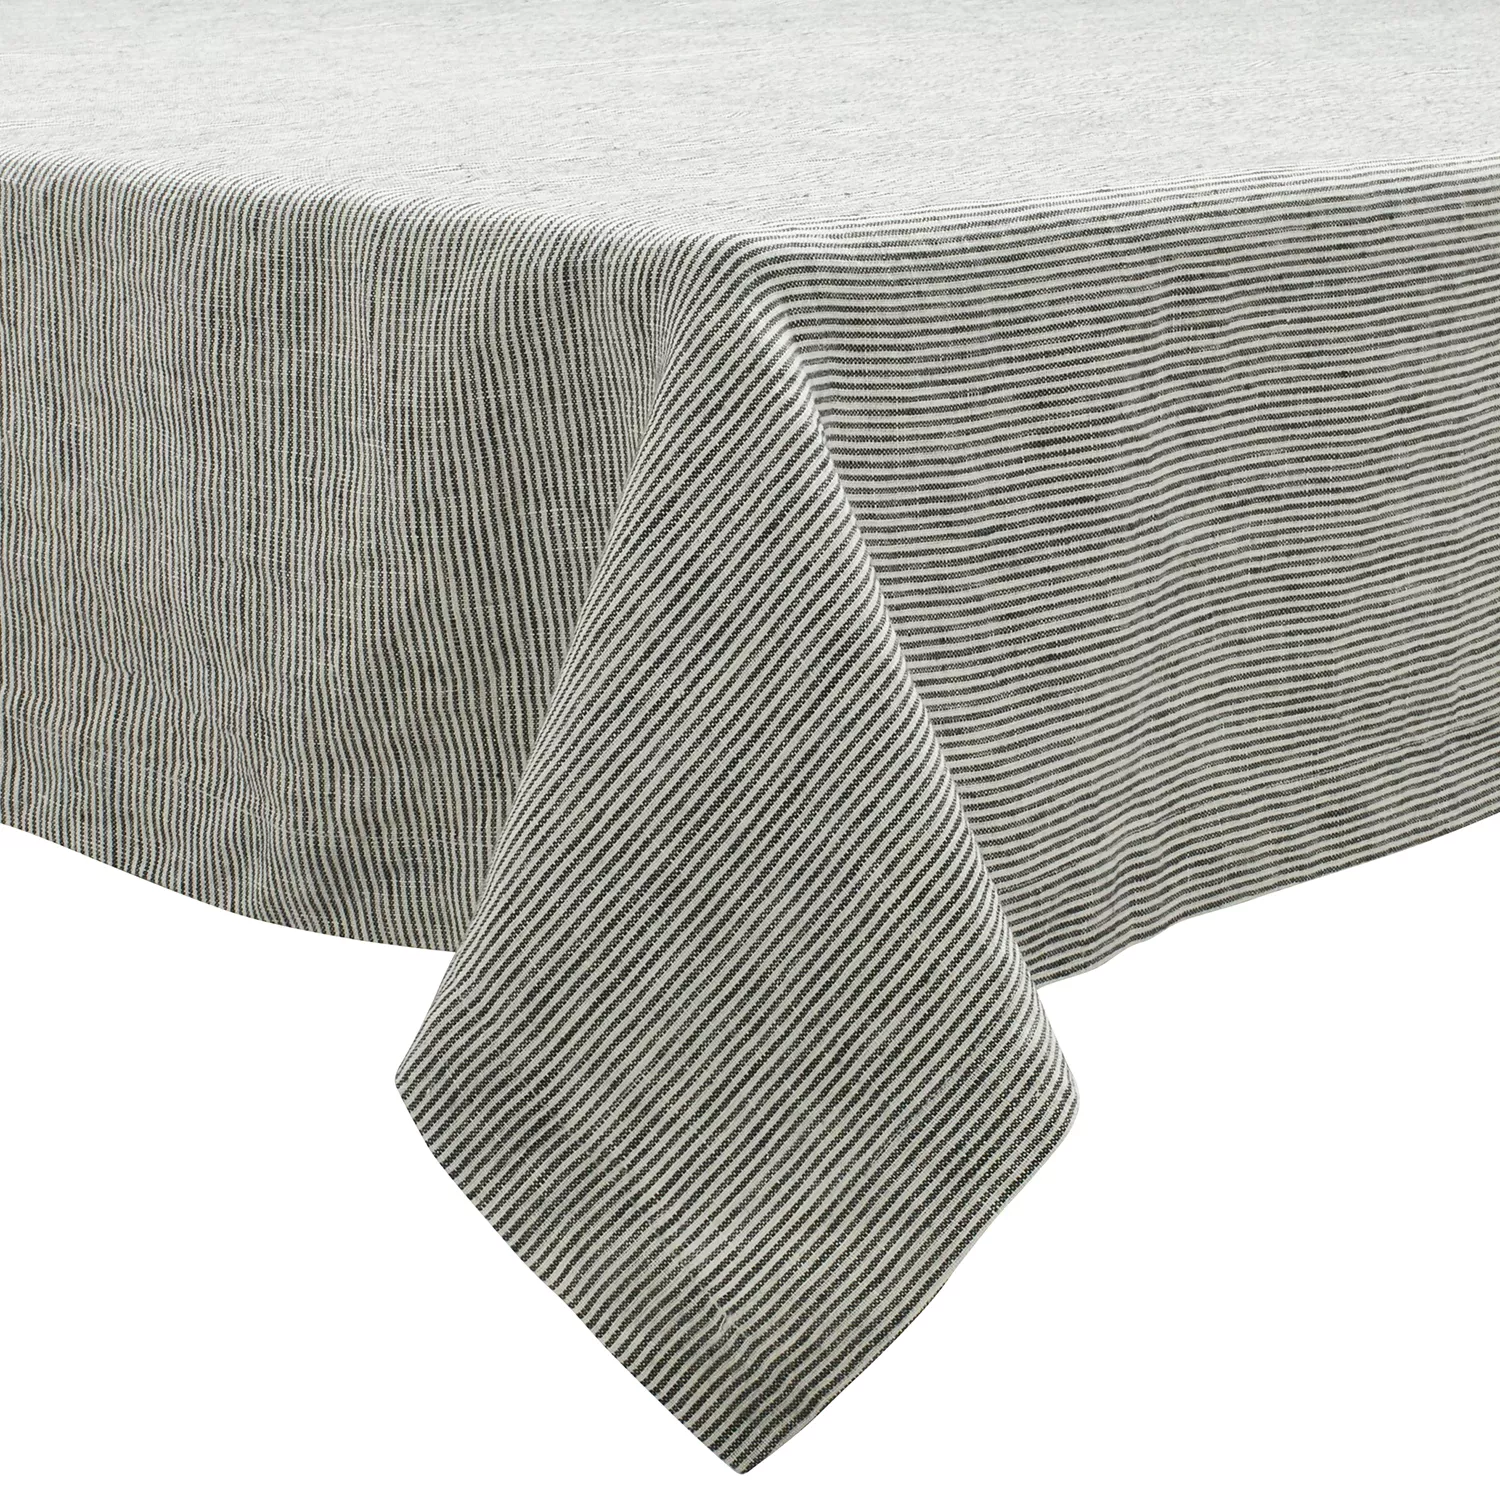 Sur La Table Pinstripe Charcoal Linen Tablecloth